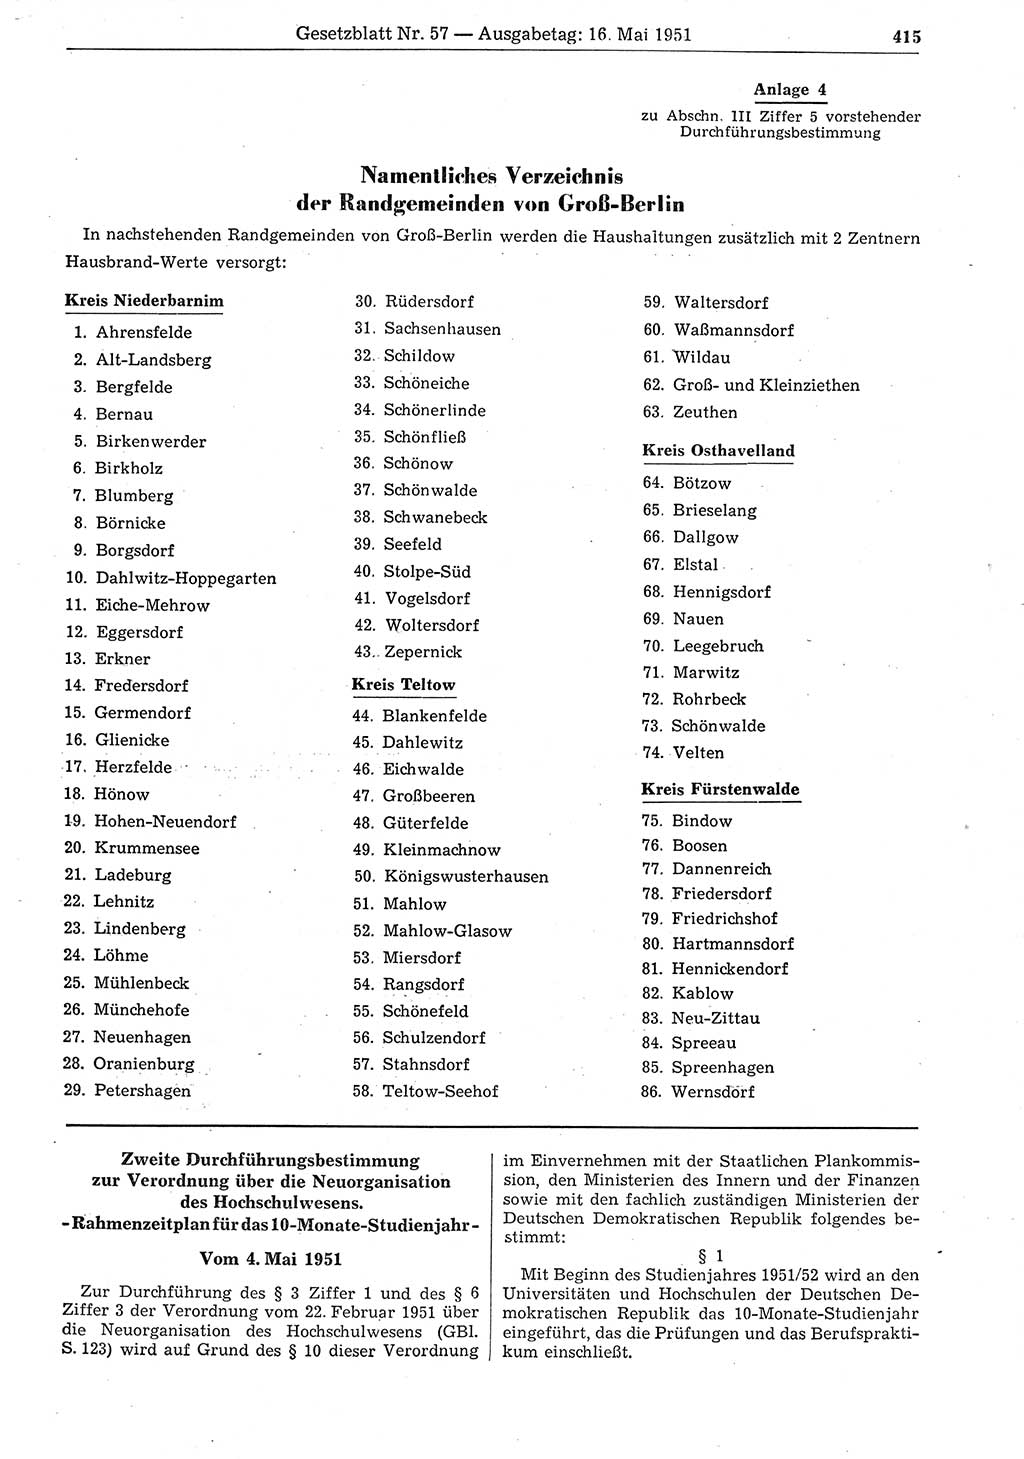 Gesetzblatt (GBl.) der Deutschen Demokratischen Republik (DDR) 1951, Seite 415 (GBl. DDR 1951, S. 415)